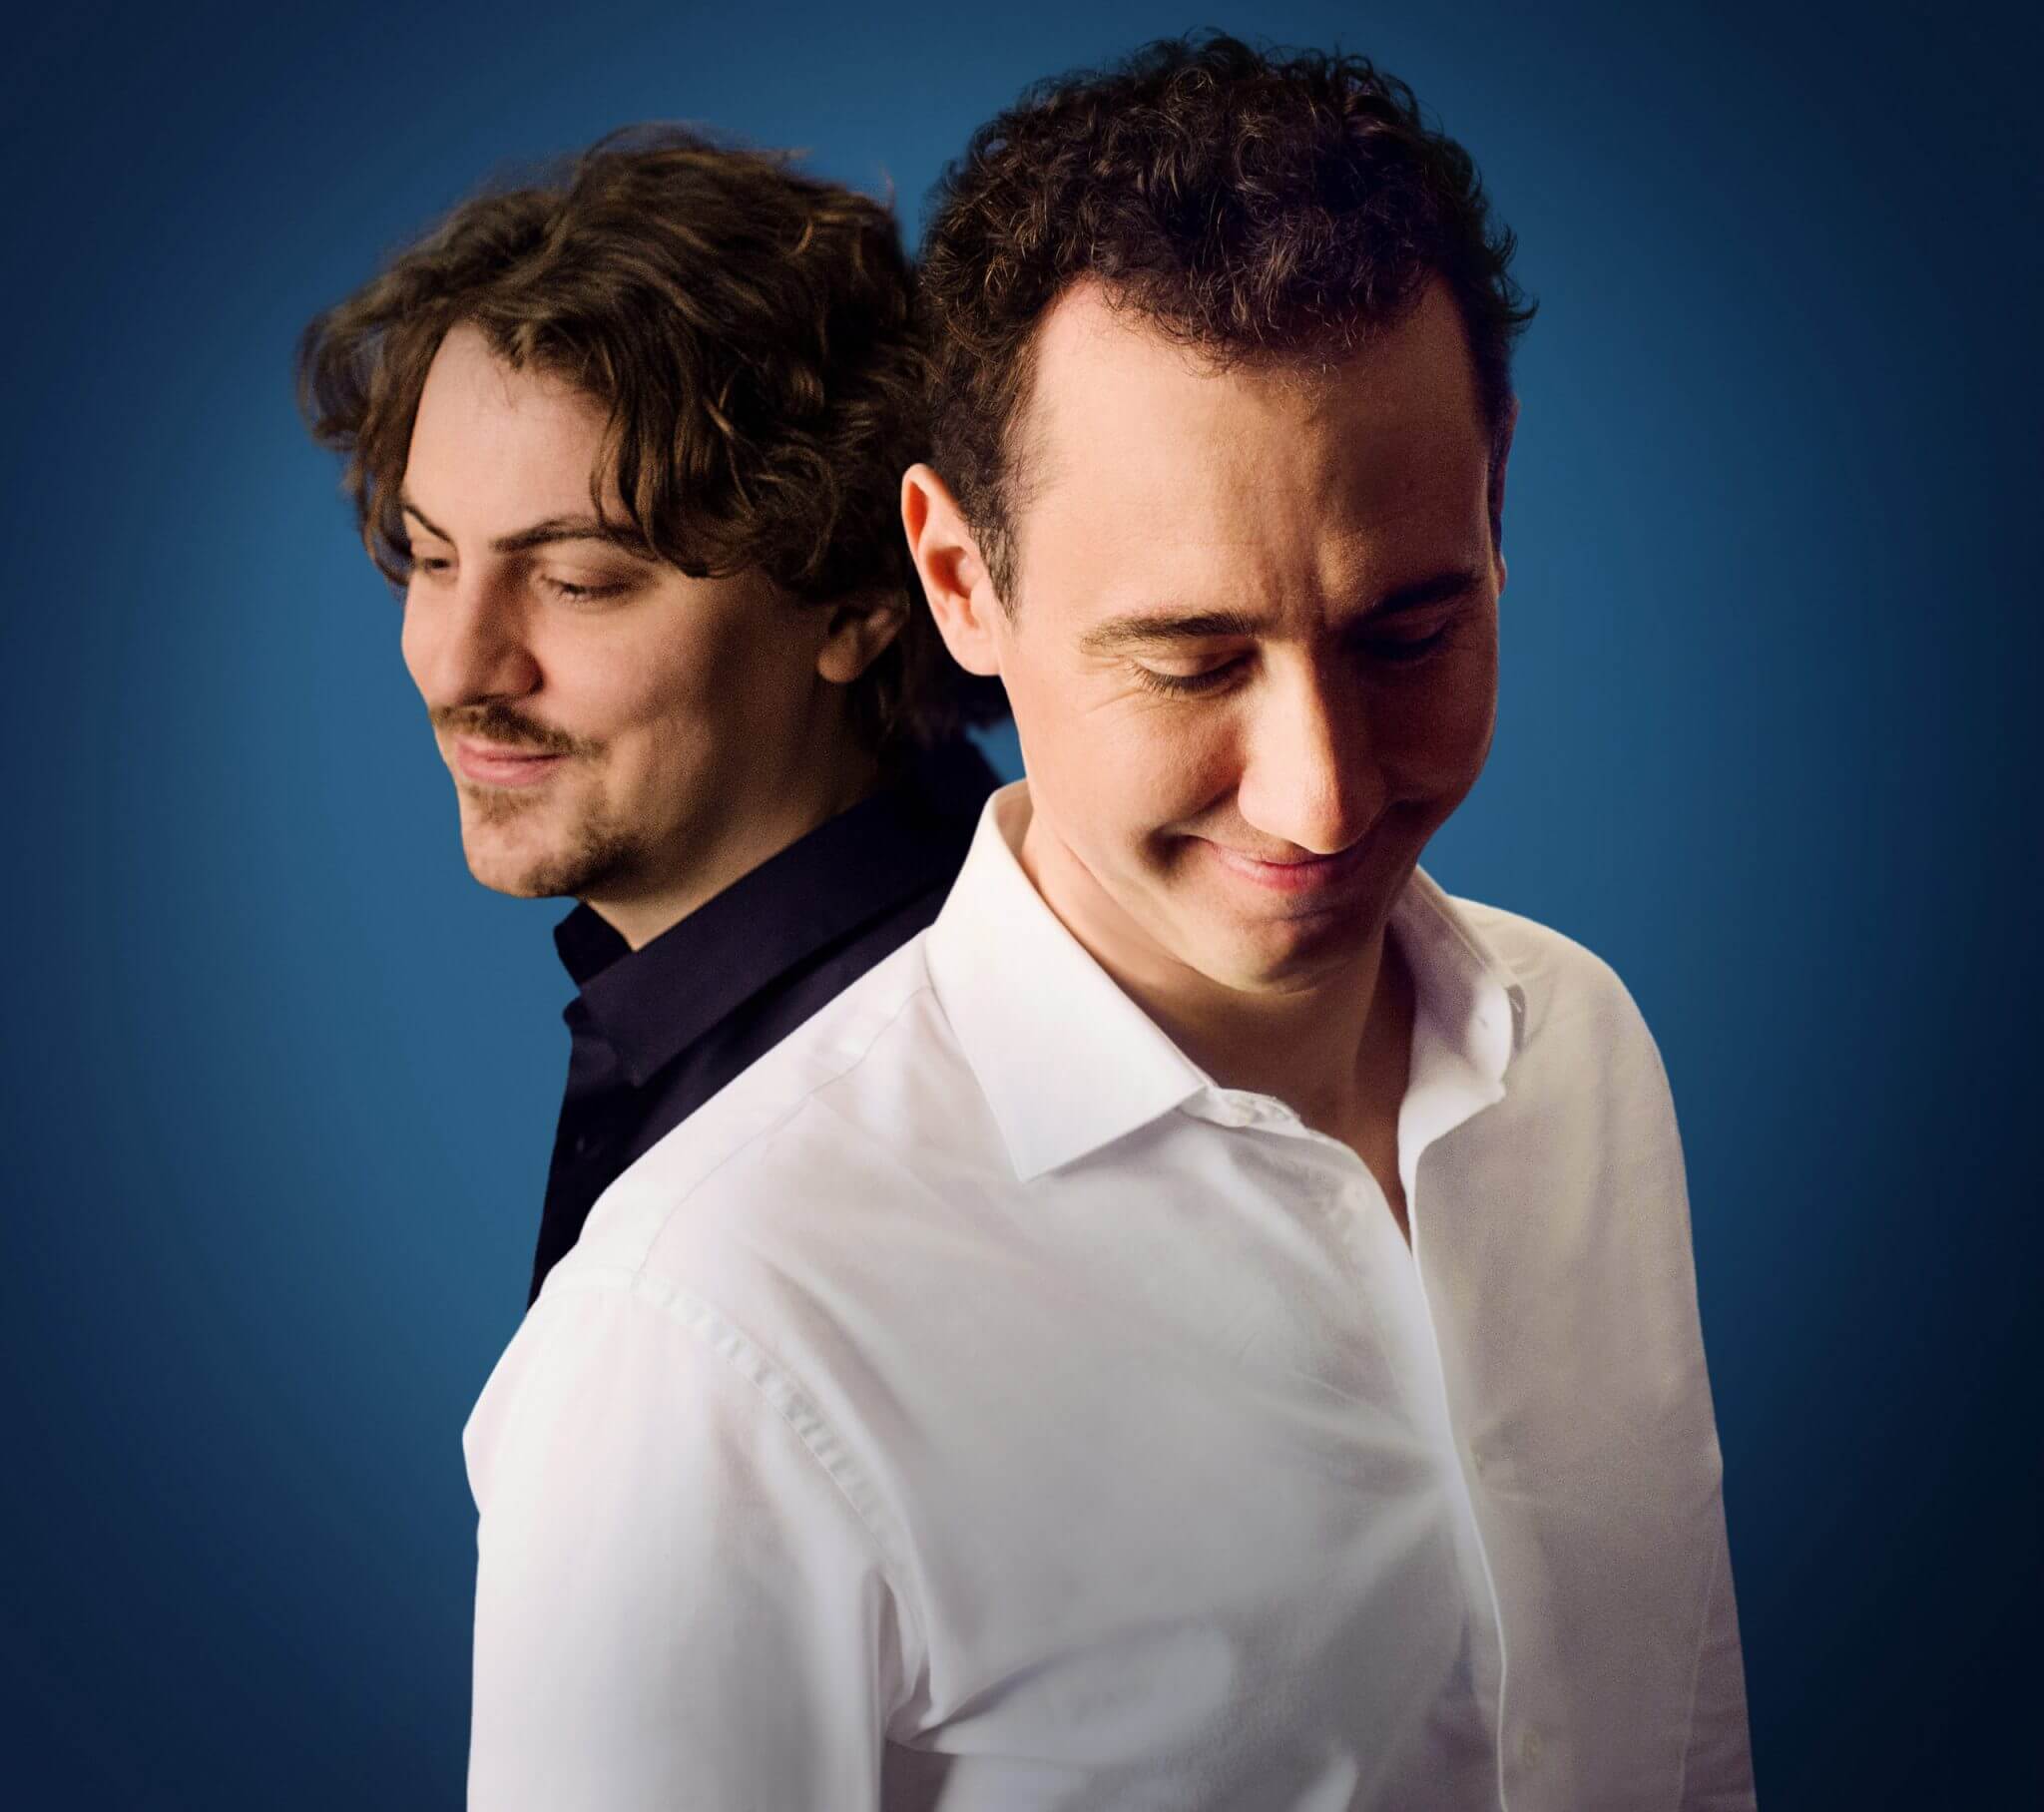 Le ténor Cyrille Dubois et le pianiste Tristan Raës présentent un programme de mélodie française autour de Fauré. (Photo : Jean-Baptiste Millot)